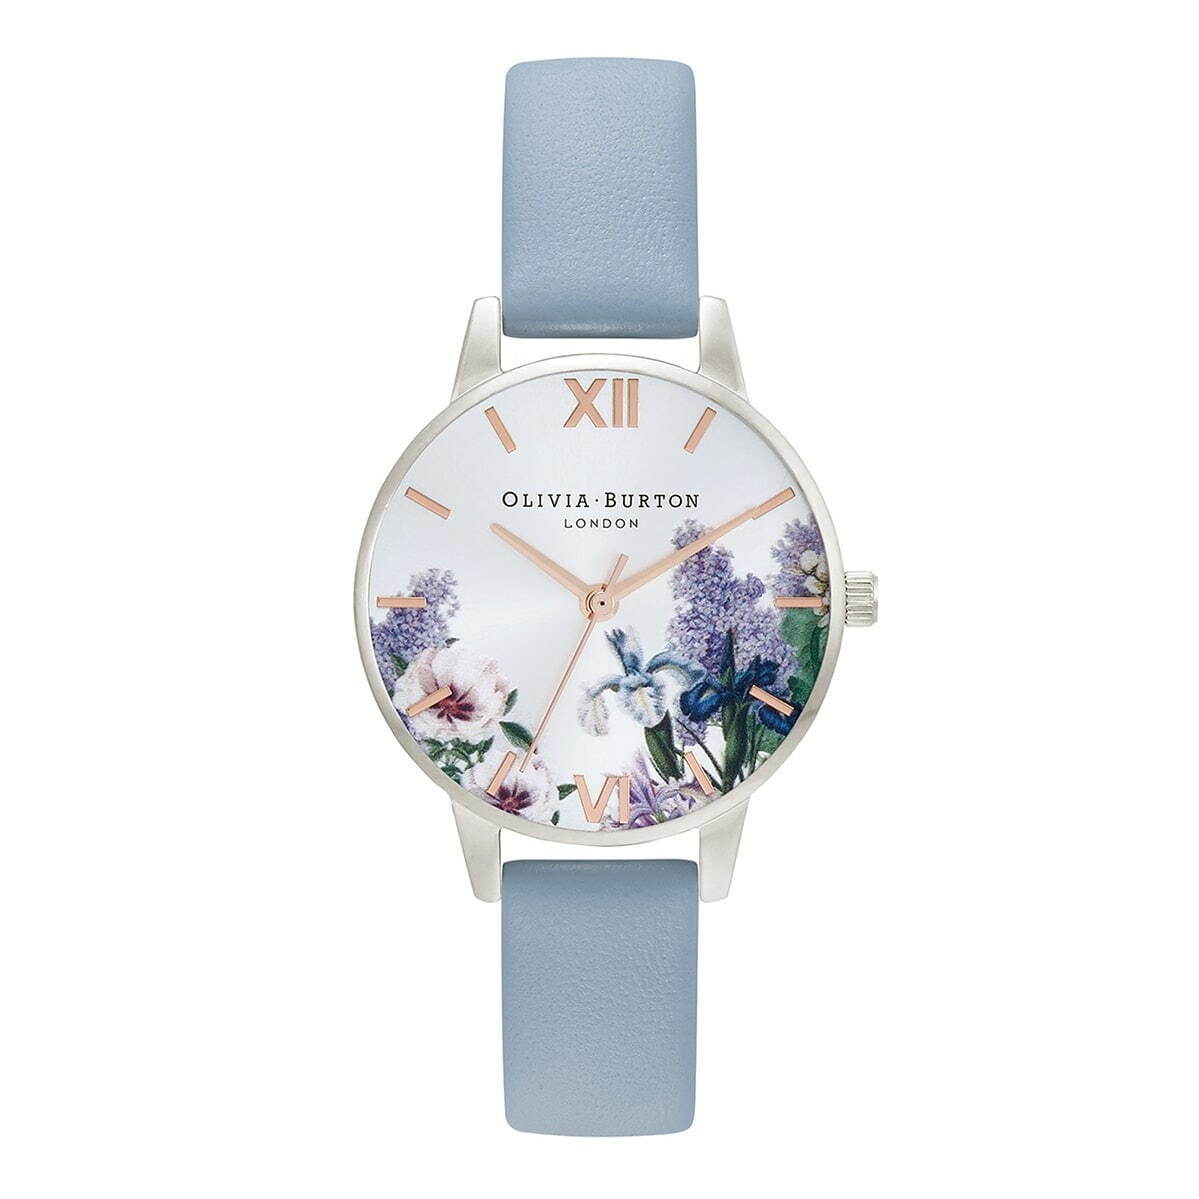 オリビア・バートン“秘密の花園”を表現したウィメンズ腕時計